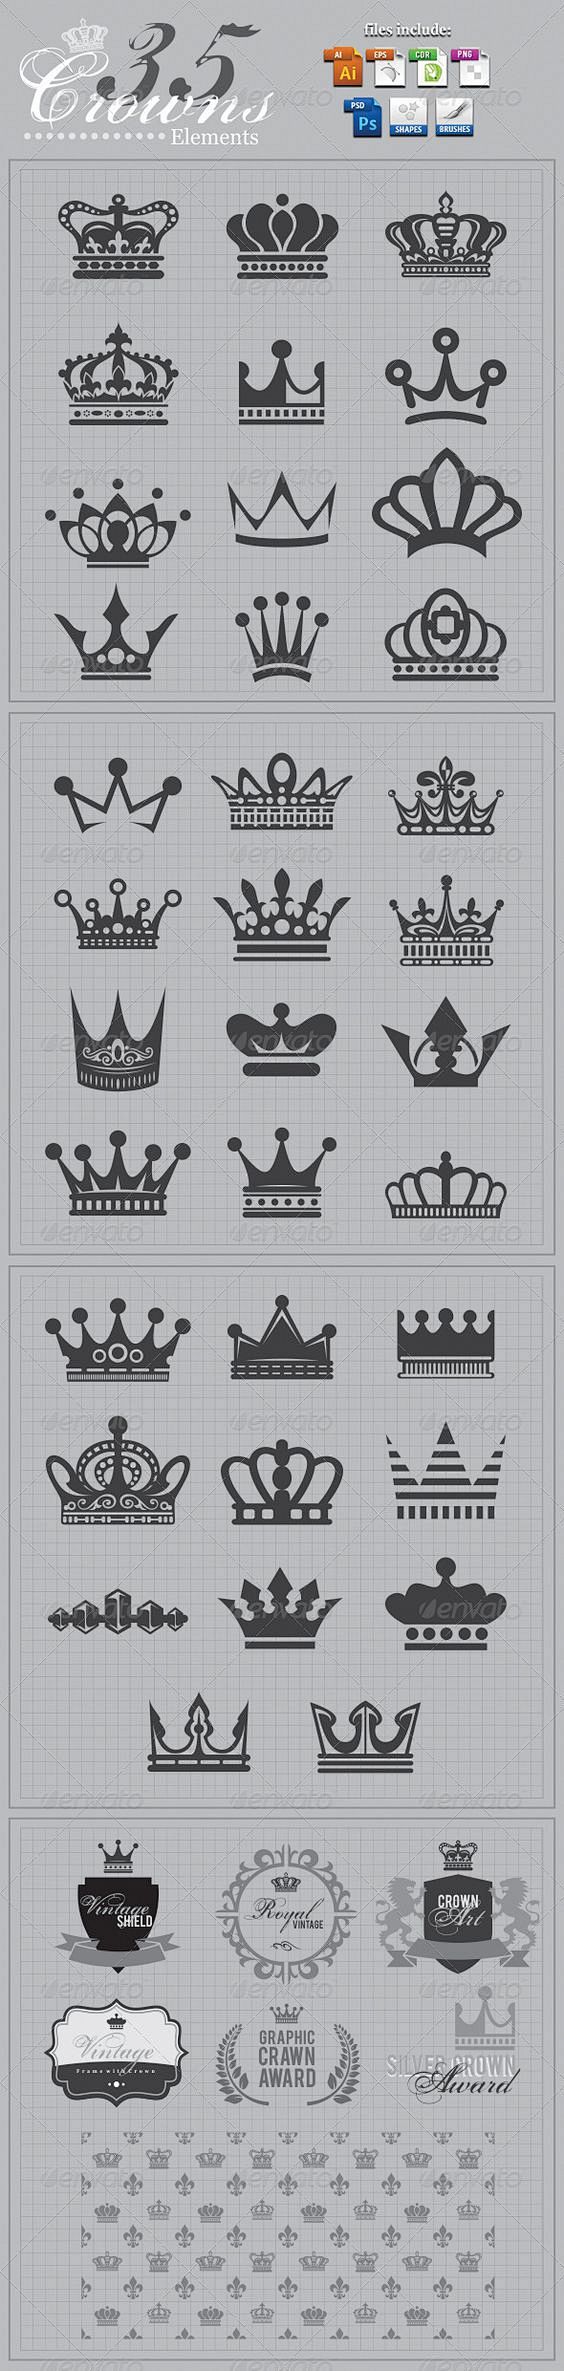 Crowns+Elements+v2: 